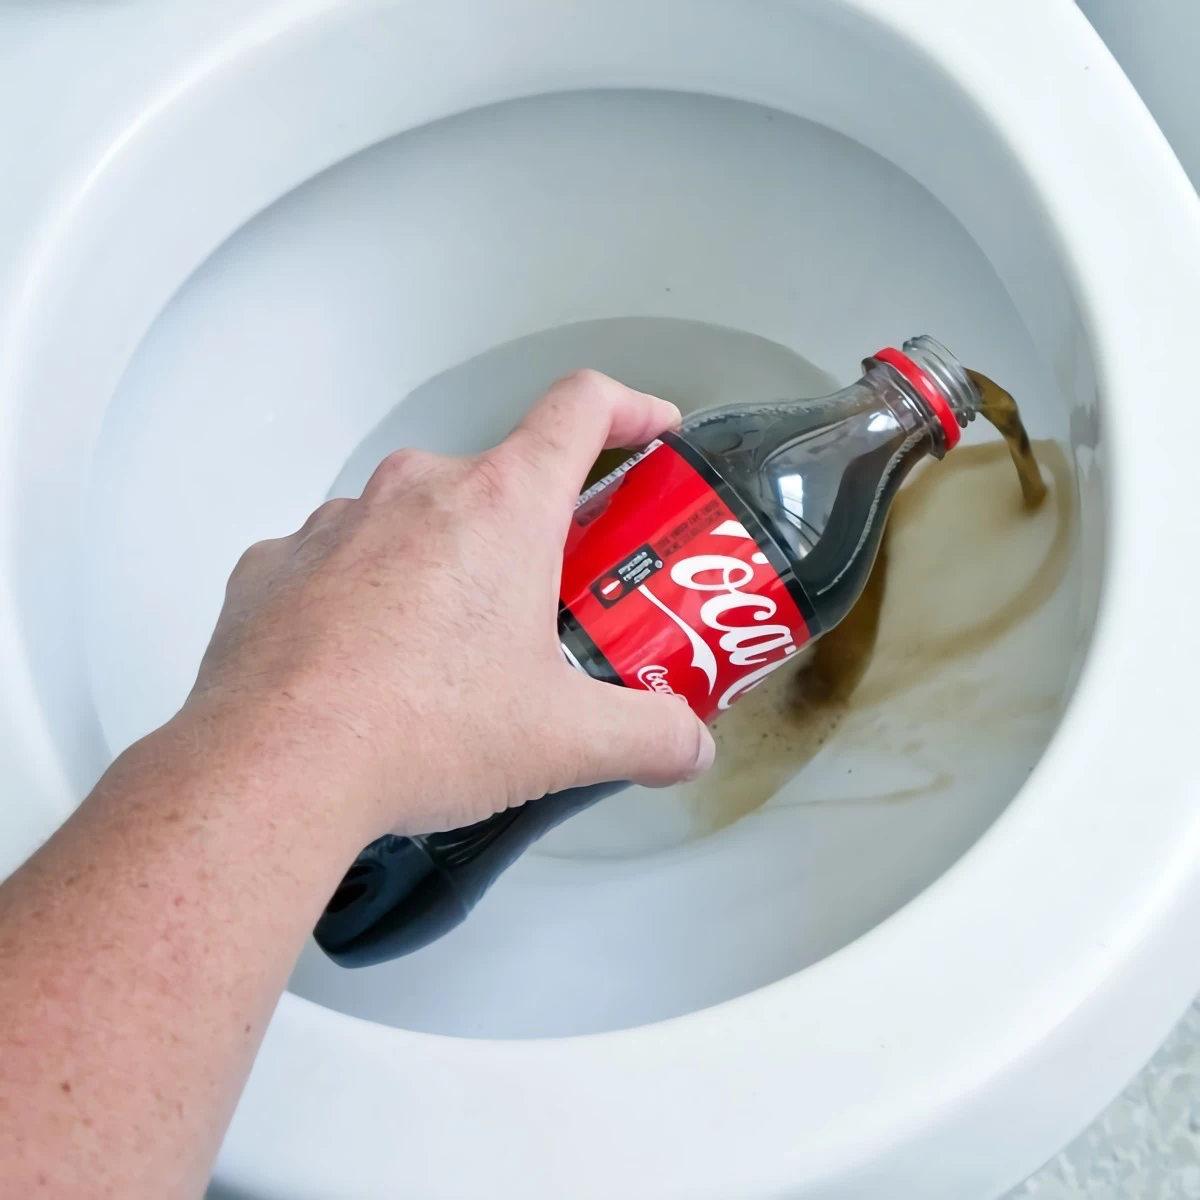 comment nettoyer la cuvette wc taches tenaces coca cola